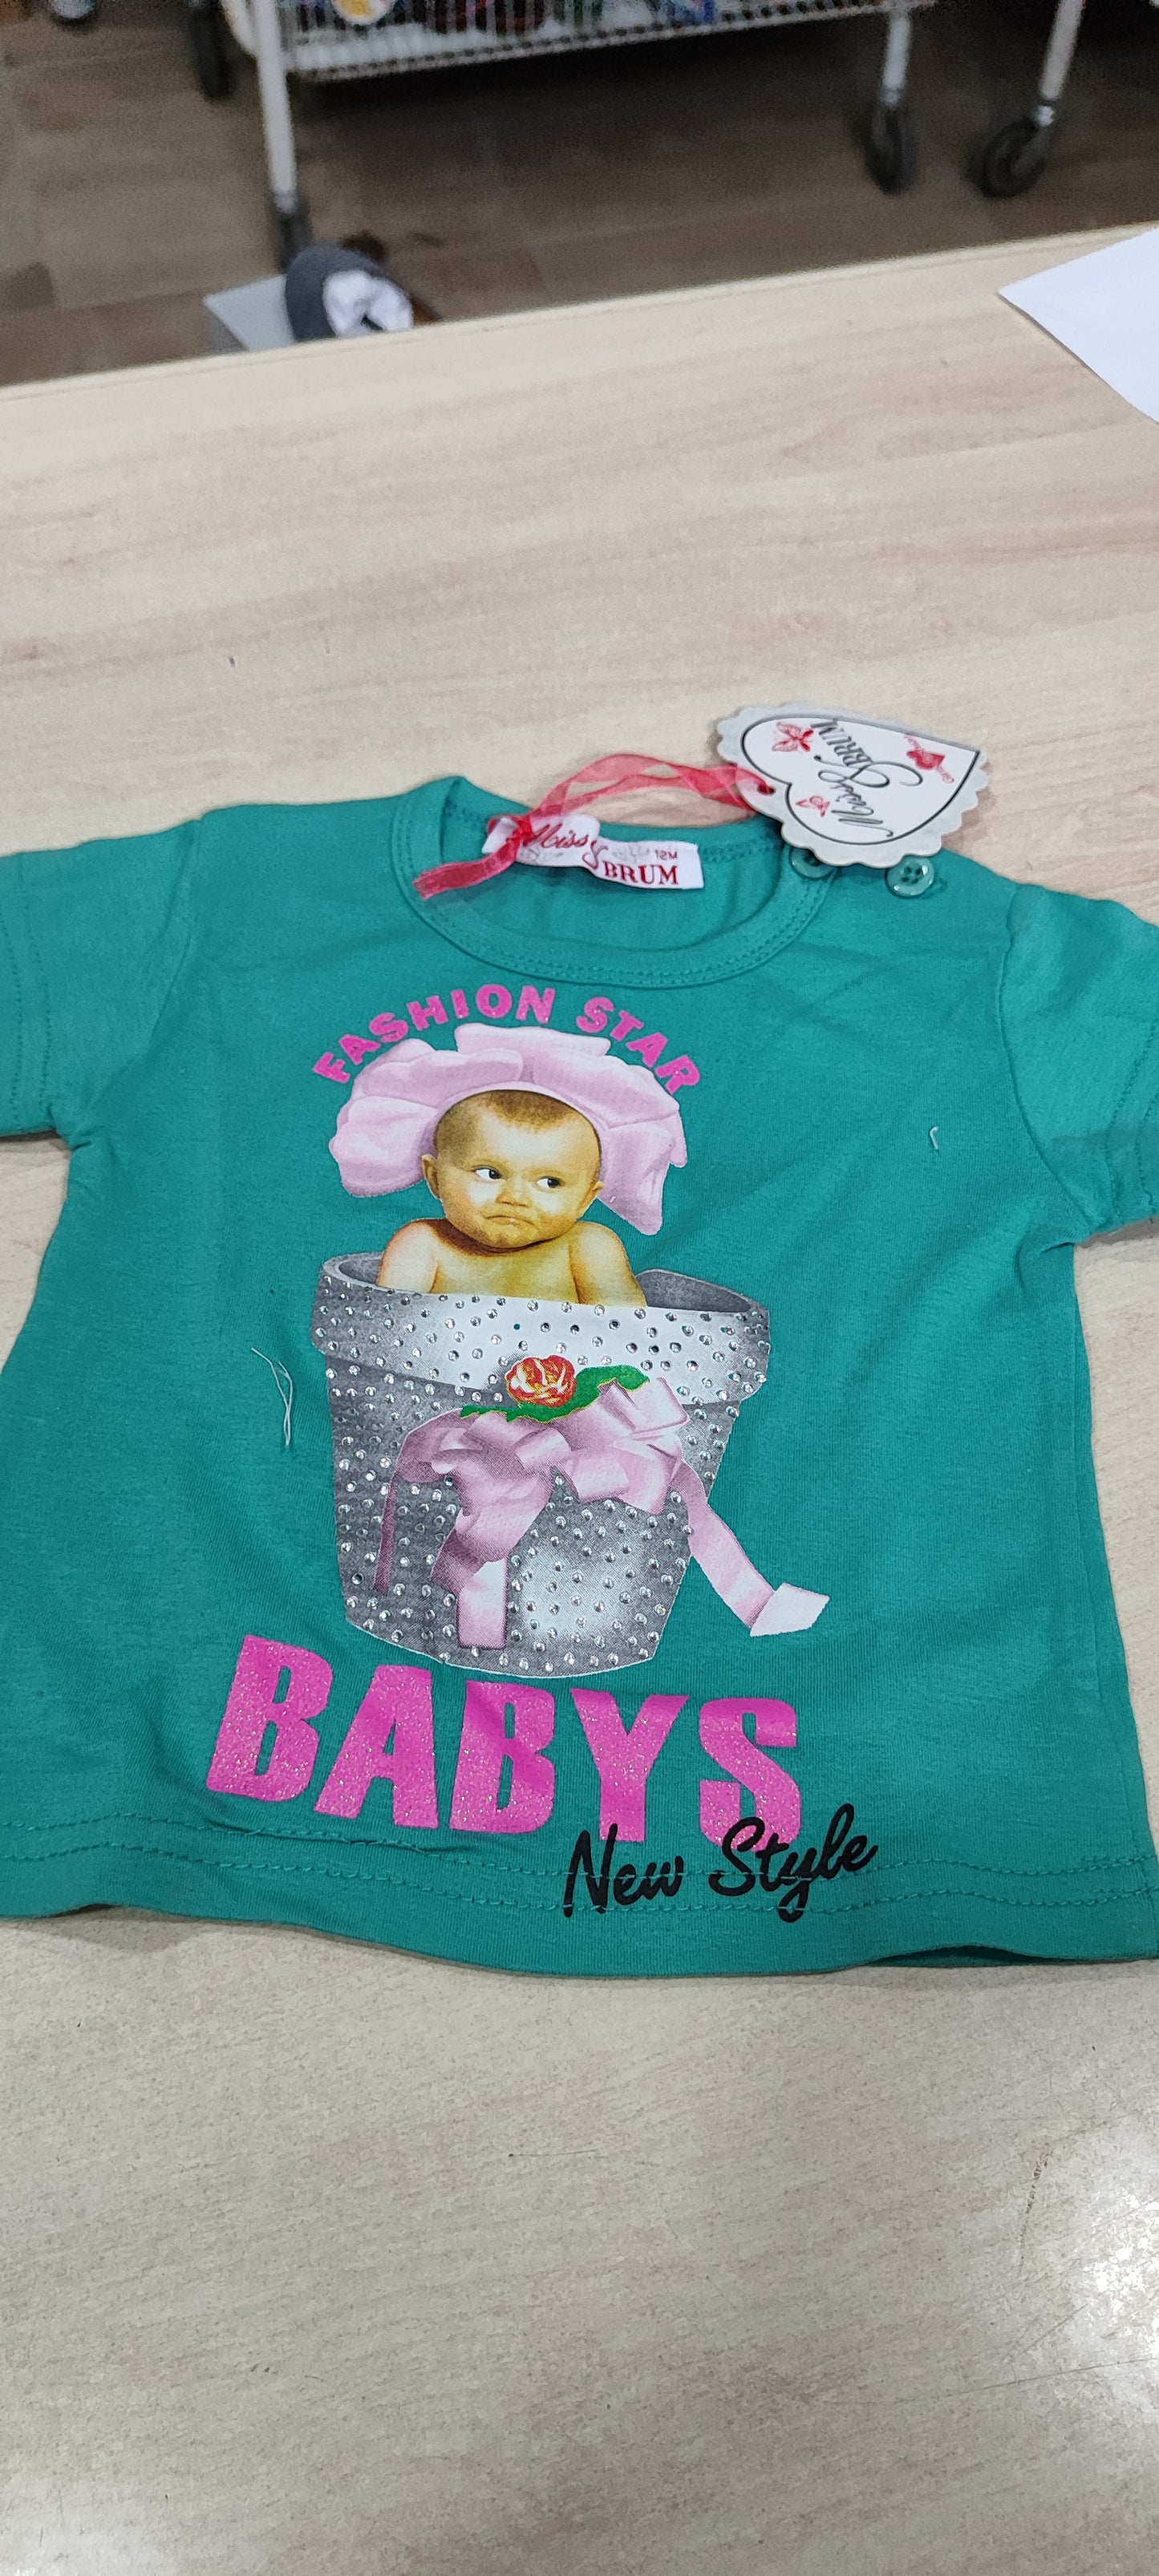 Offertissima sttimanale  magliette bimbi e neonati a 1,50 in sottocosto